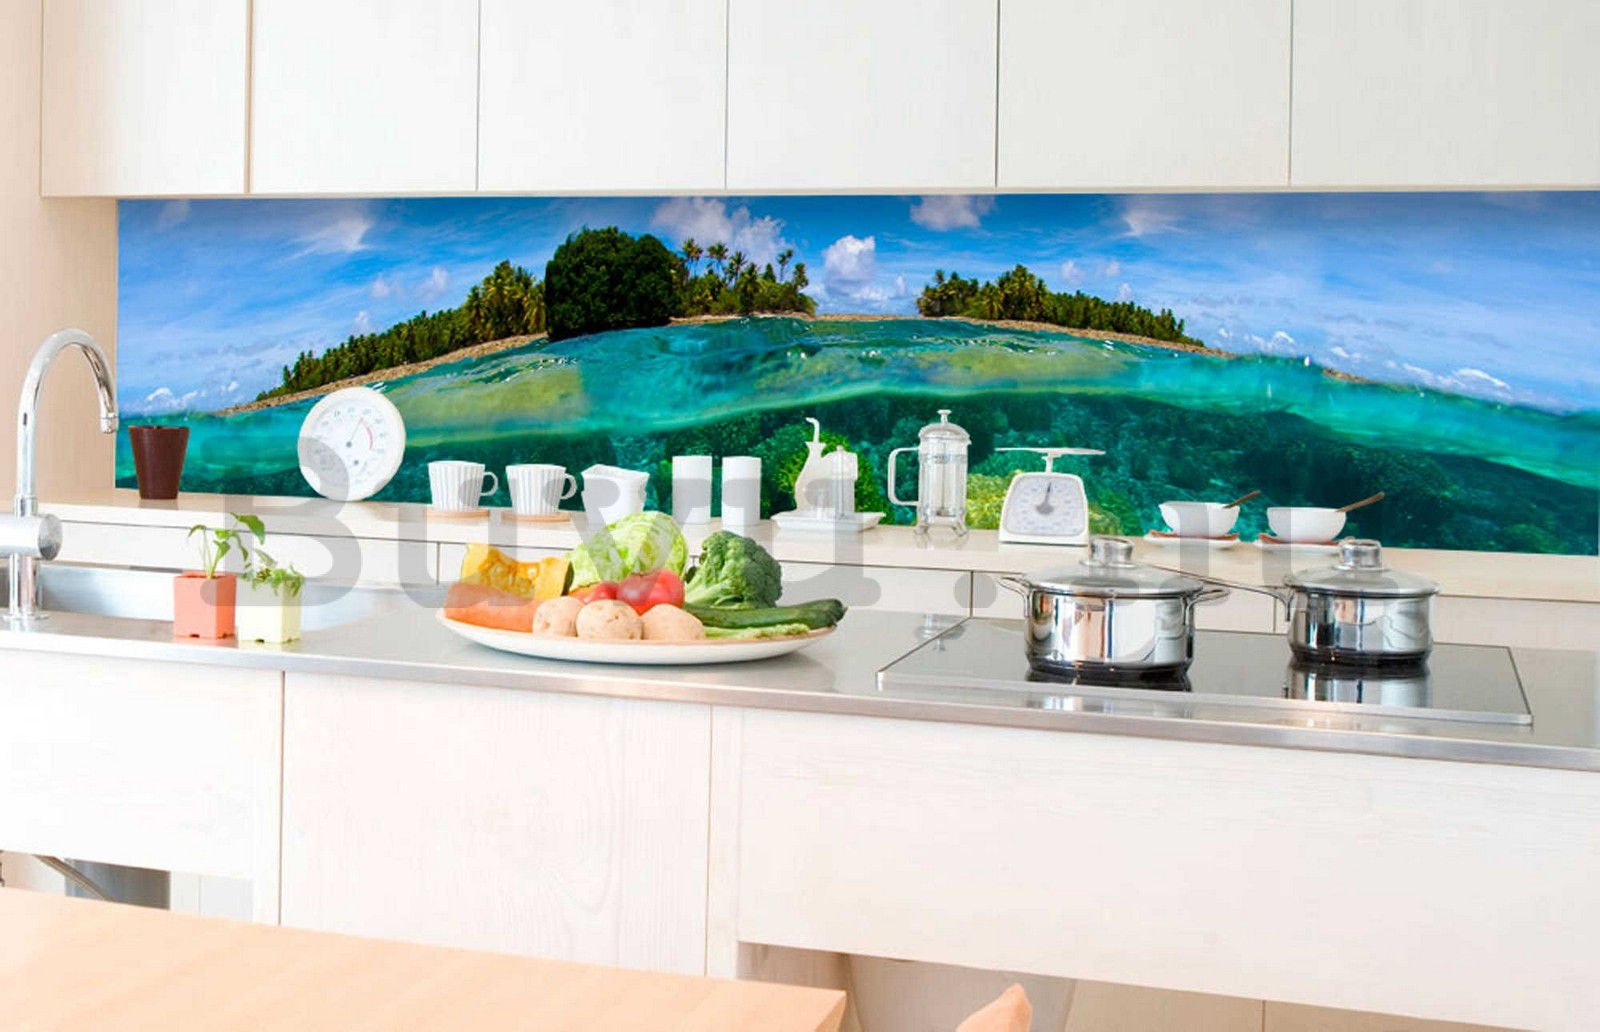 Öntapadós mosható fotófotótapéta konyhába - Korallzátony, 350x60 cm